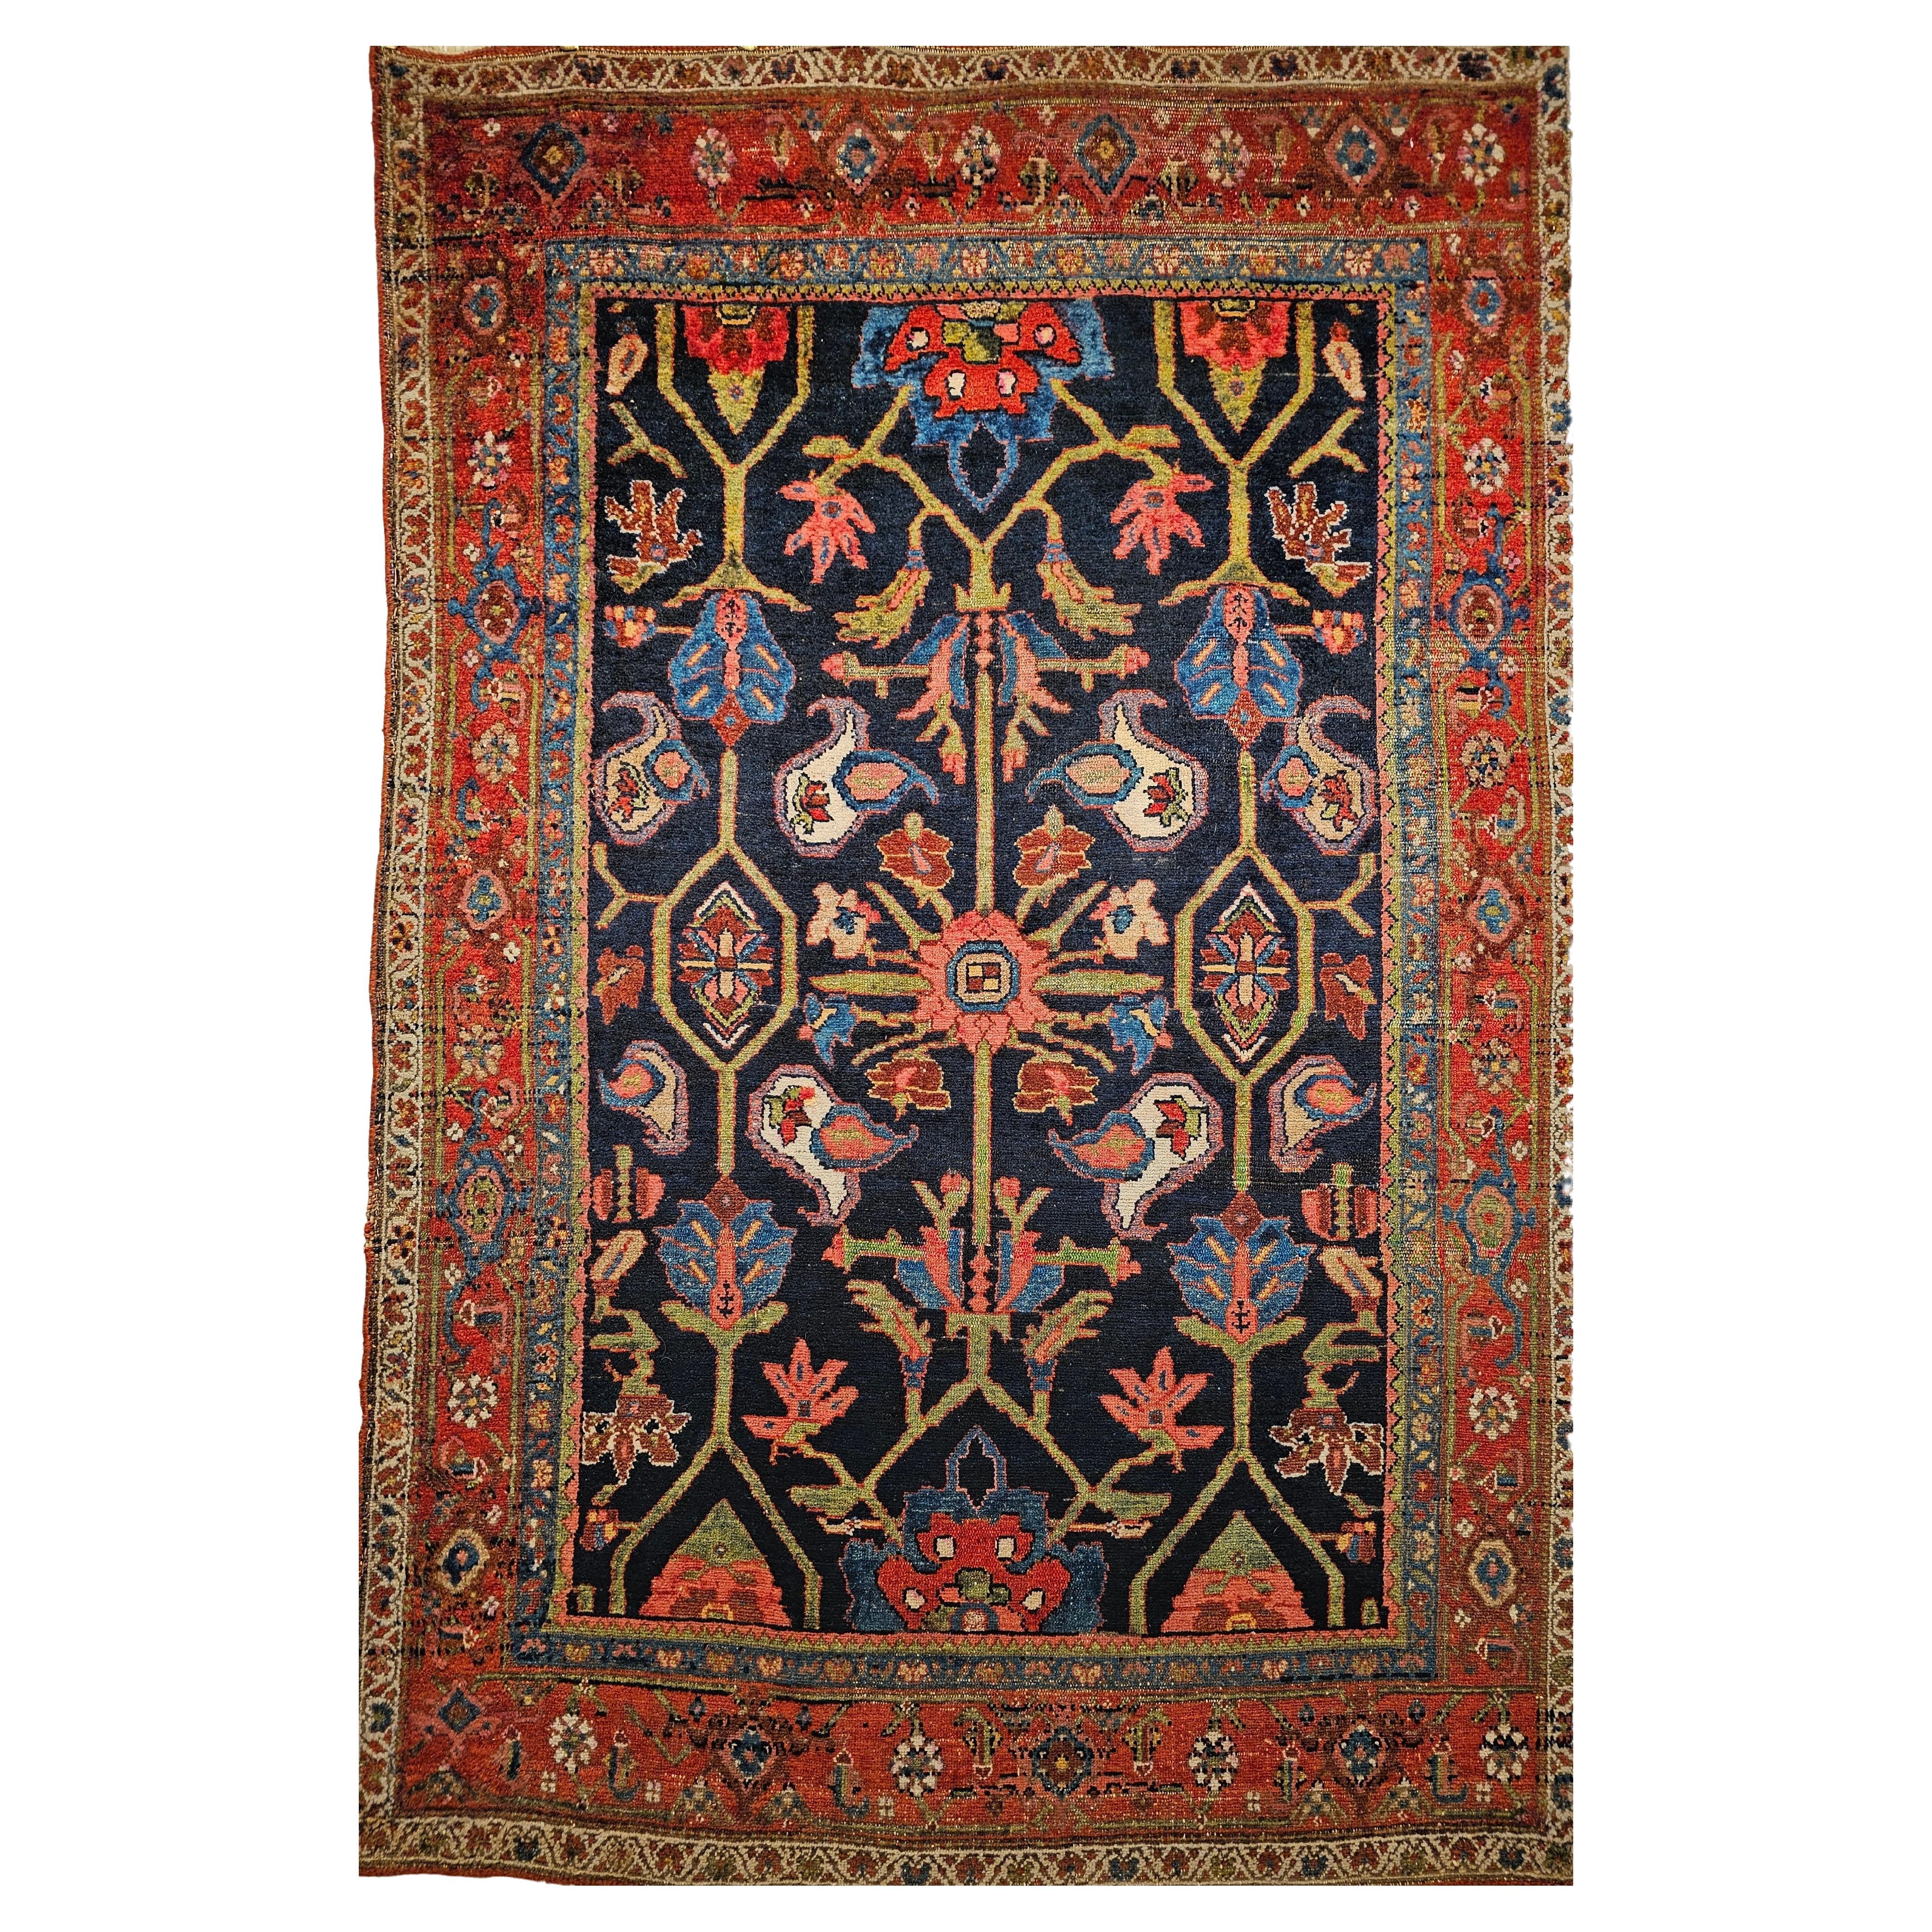 Persischer Mahal Sultanabad-Teppich im Allover-Muster in Marineblau, Grün, Rot